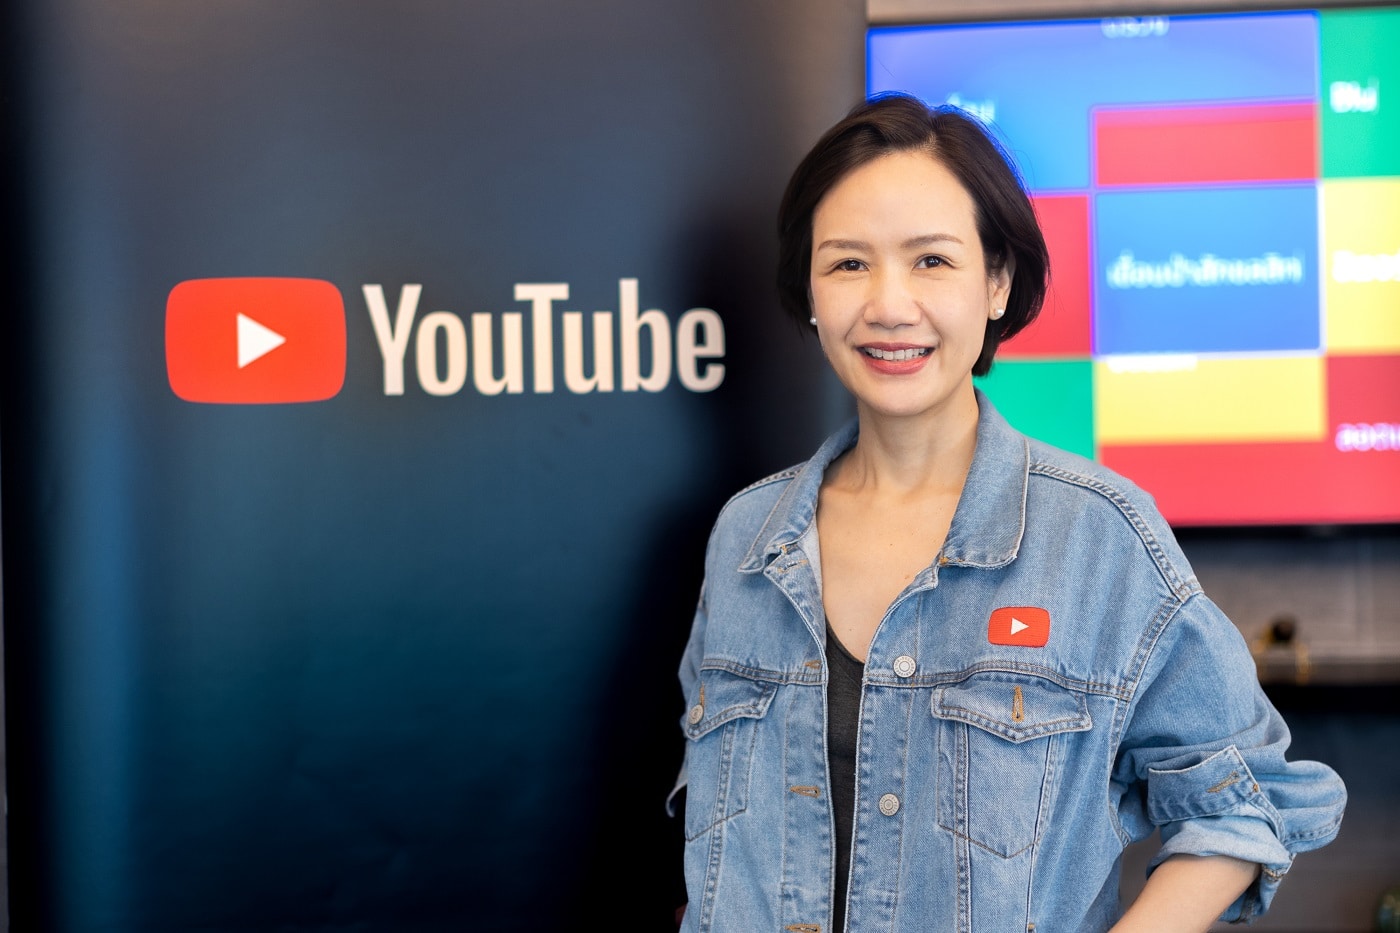 มุกพิม อนันตชัย หัวหน้าฝ่ายพันธมิตรธุรกิจ YouTube ประเทศไทย และเวียดนาม